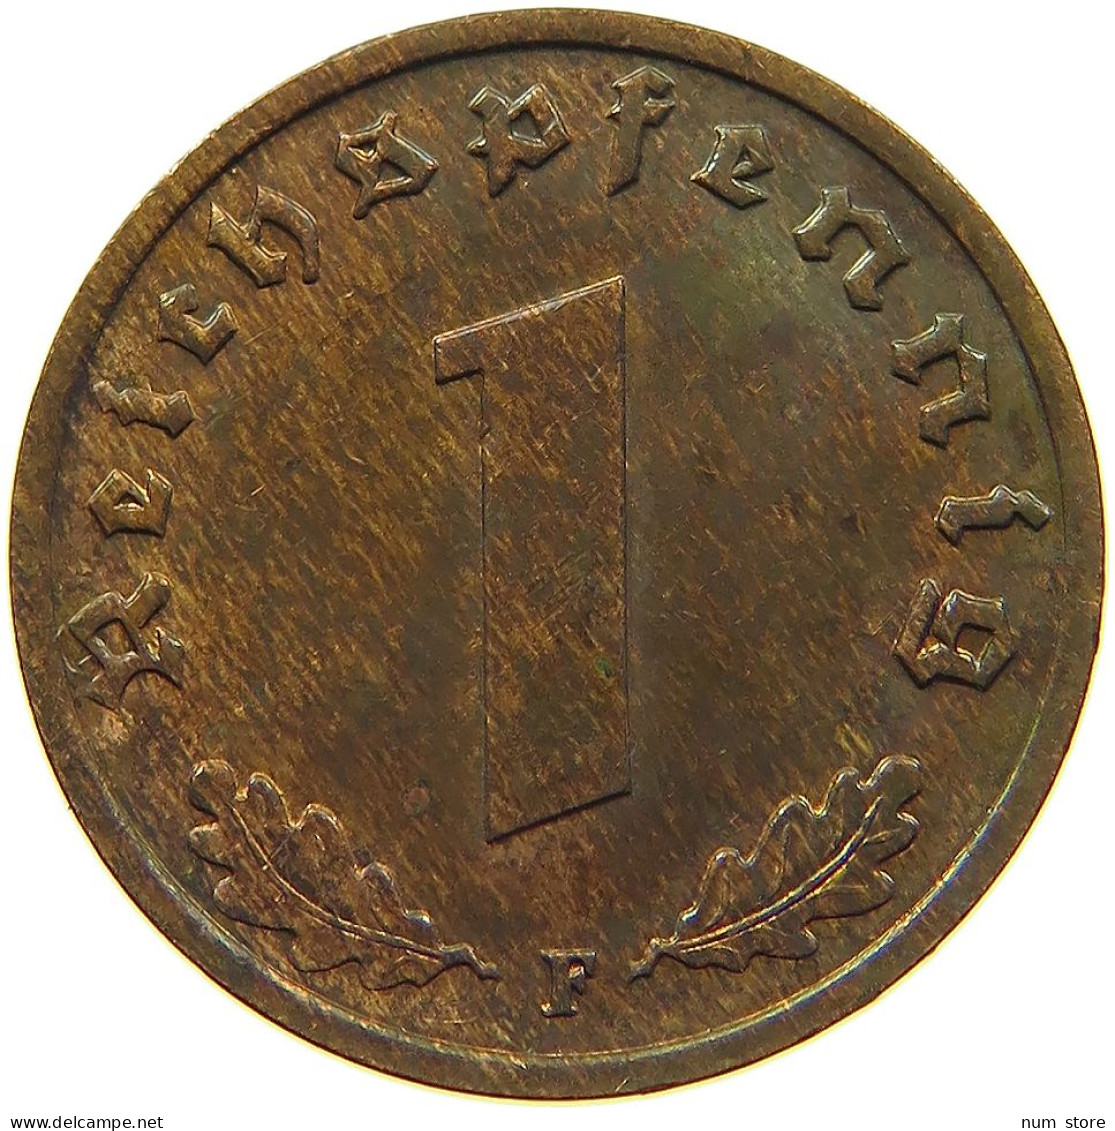 DRITTES REICH REICHSPFENNIG 1938 F  #MA 100085 - 1 Reichspfennig